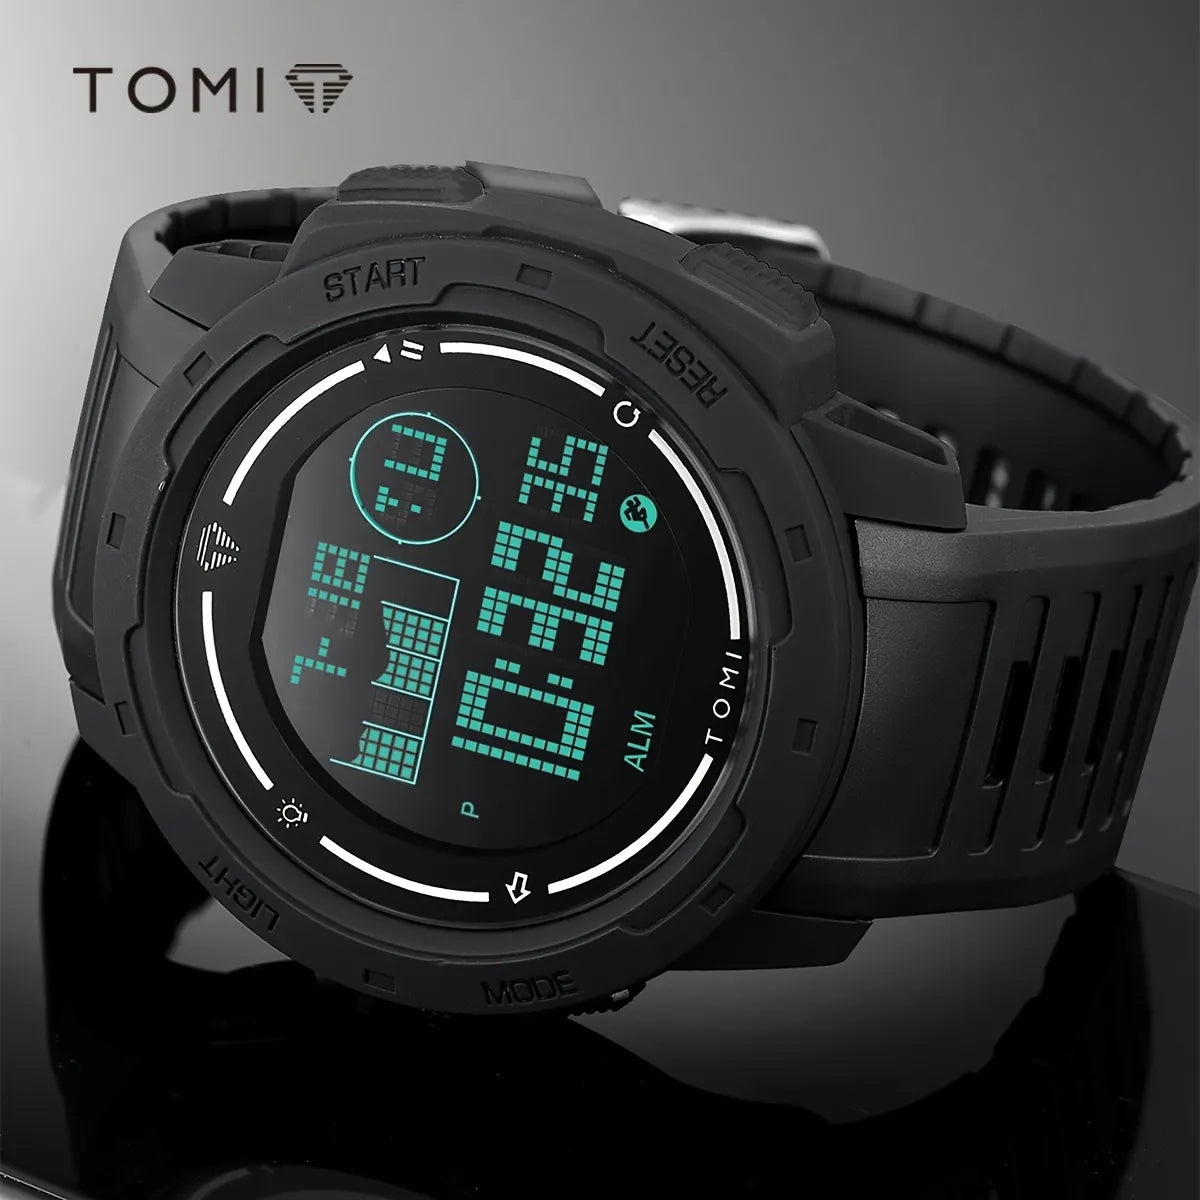 TOMI T-222 Digital Sports Watch